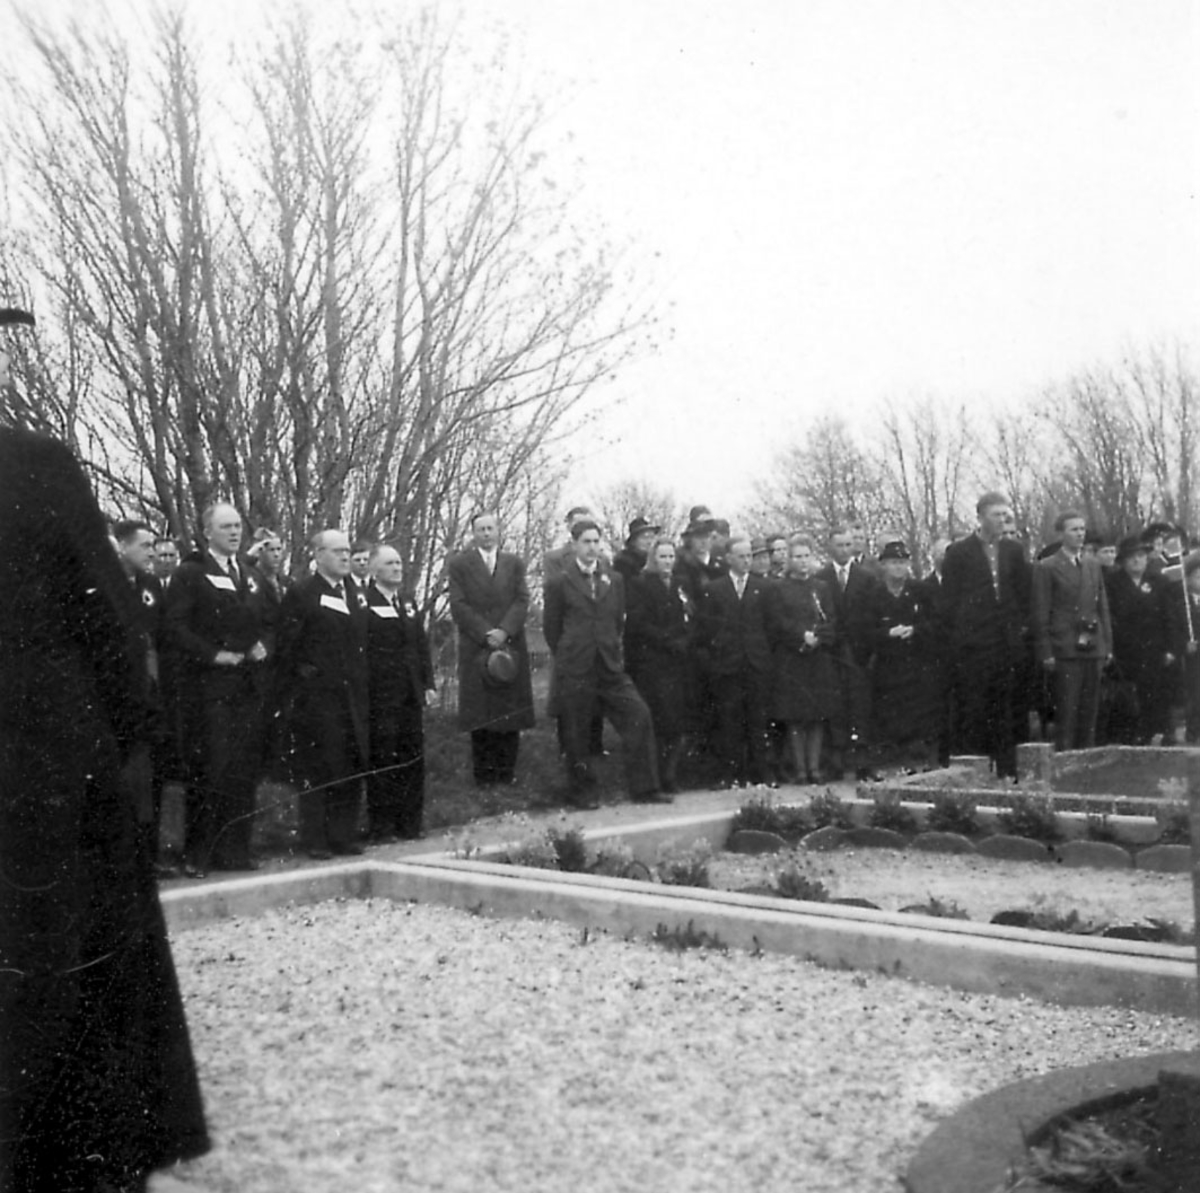 Frigjøringsdagene i Bodø etter krigen 1940 - 1945. "Høytidelighet/Minnestund", mange personer samlet.